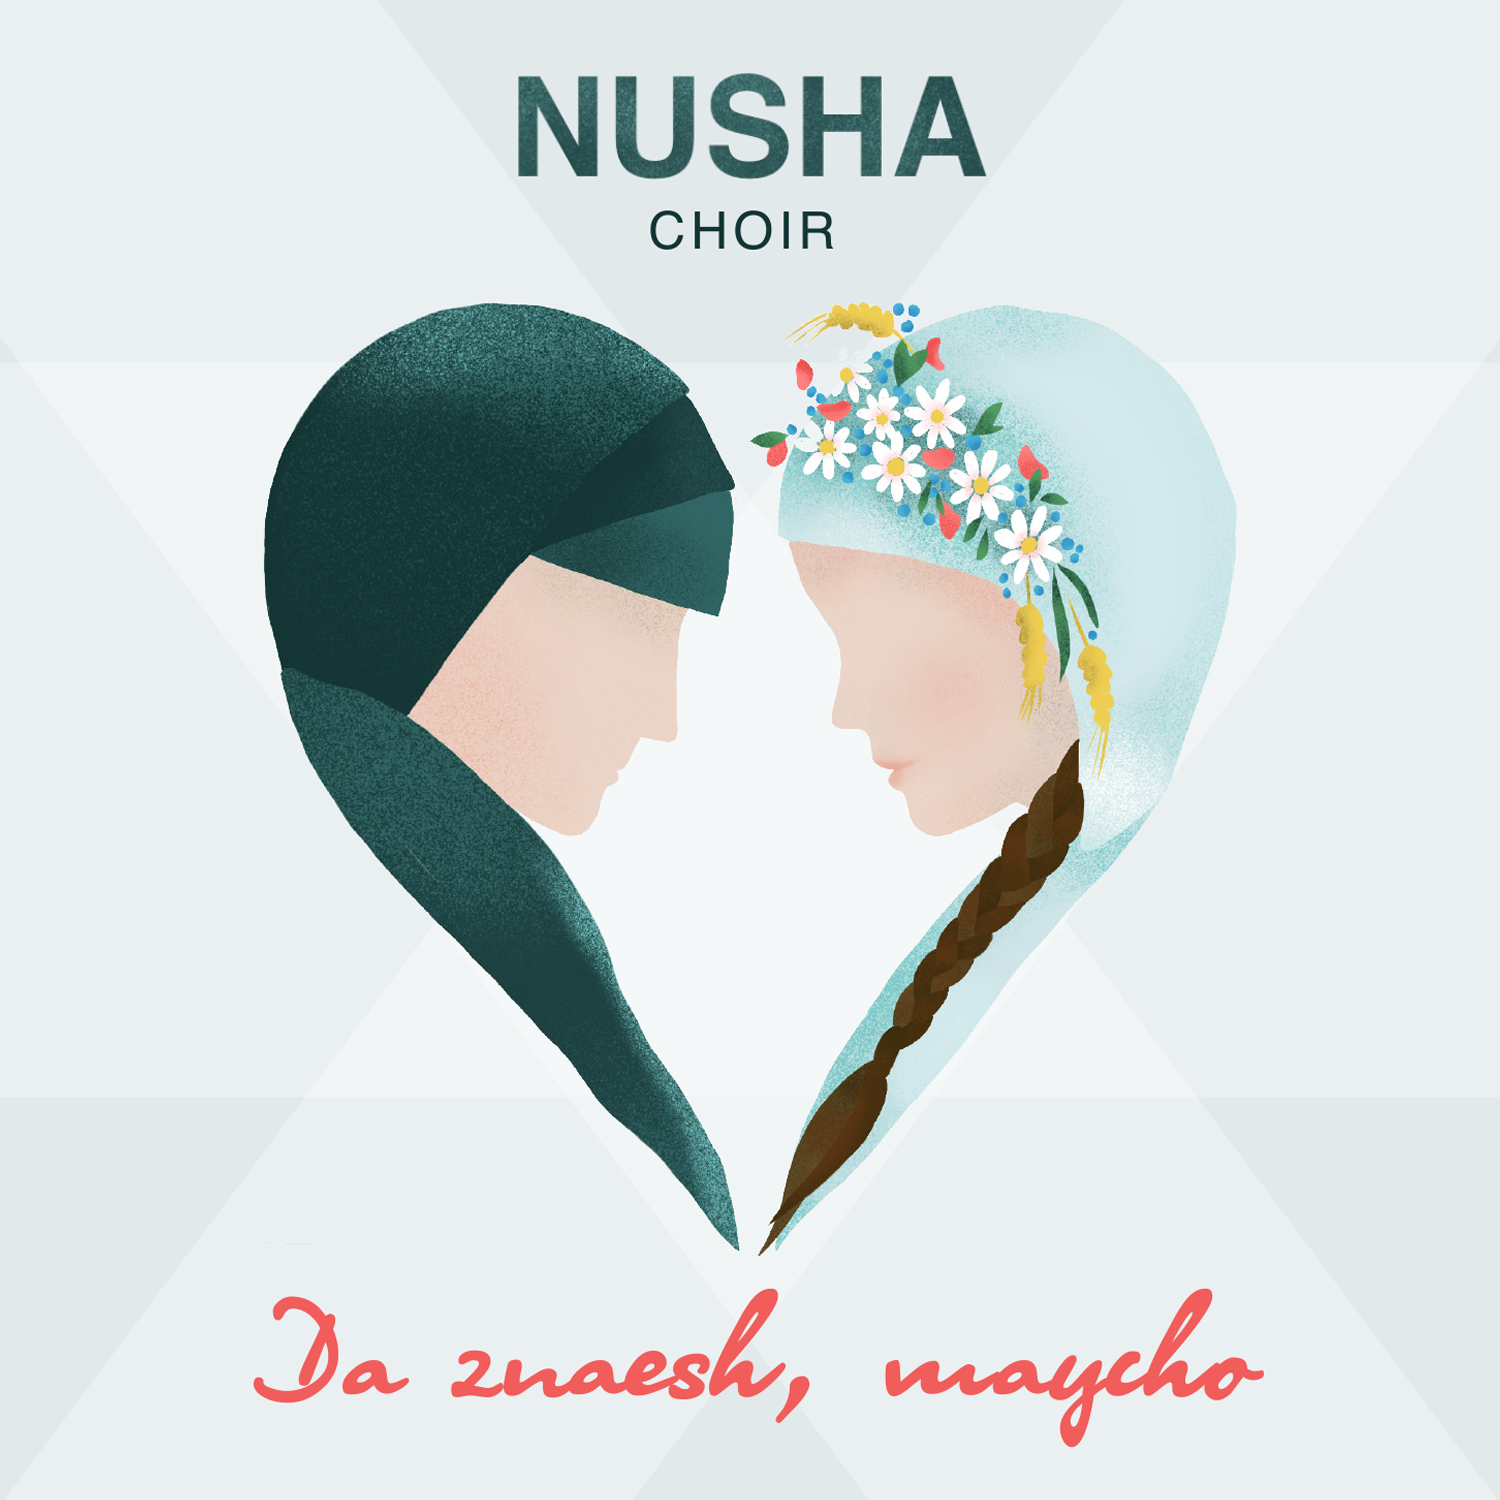 Nusha - Smak słowiańskiego folku